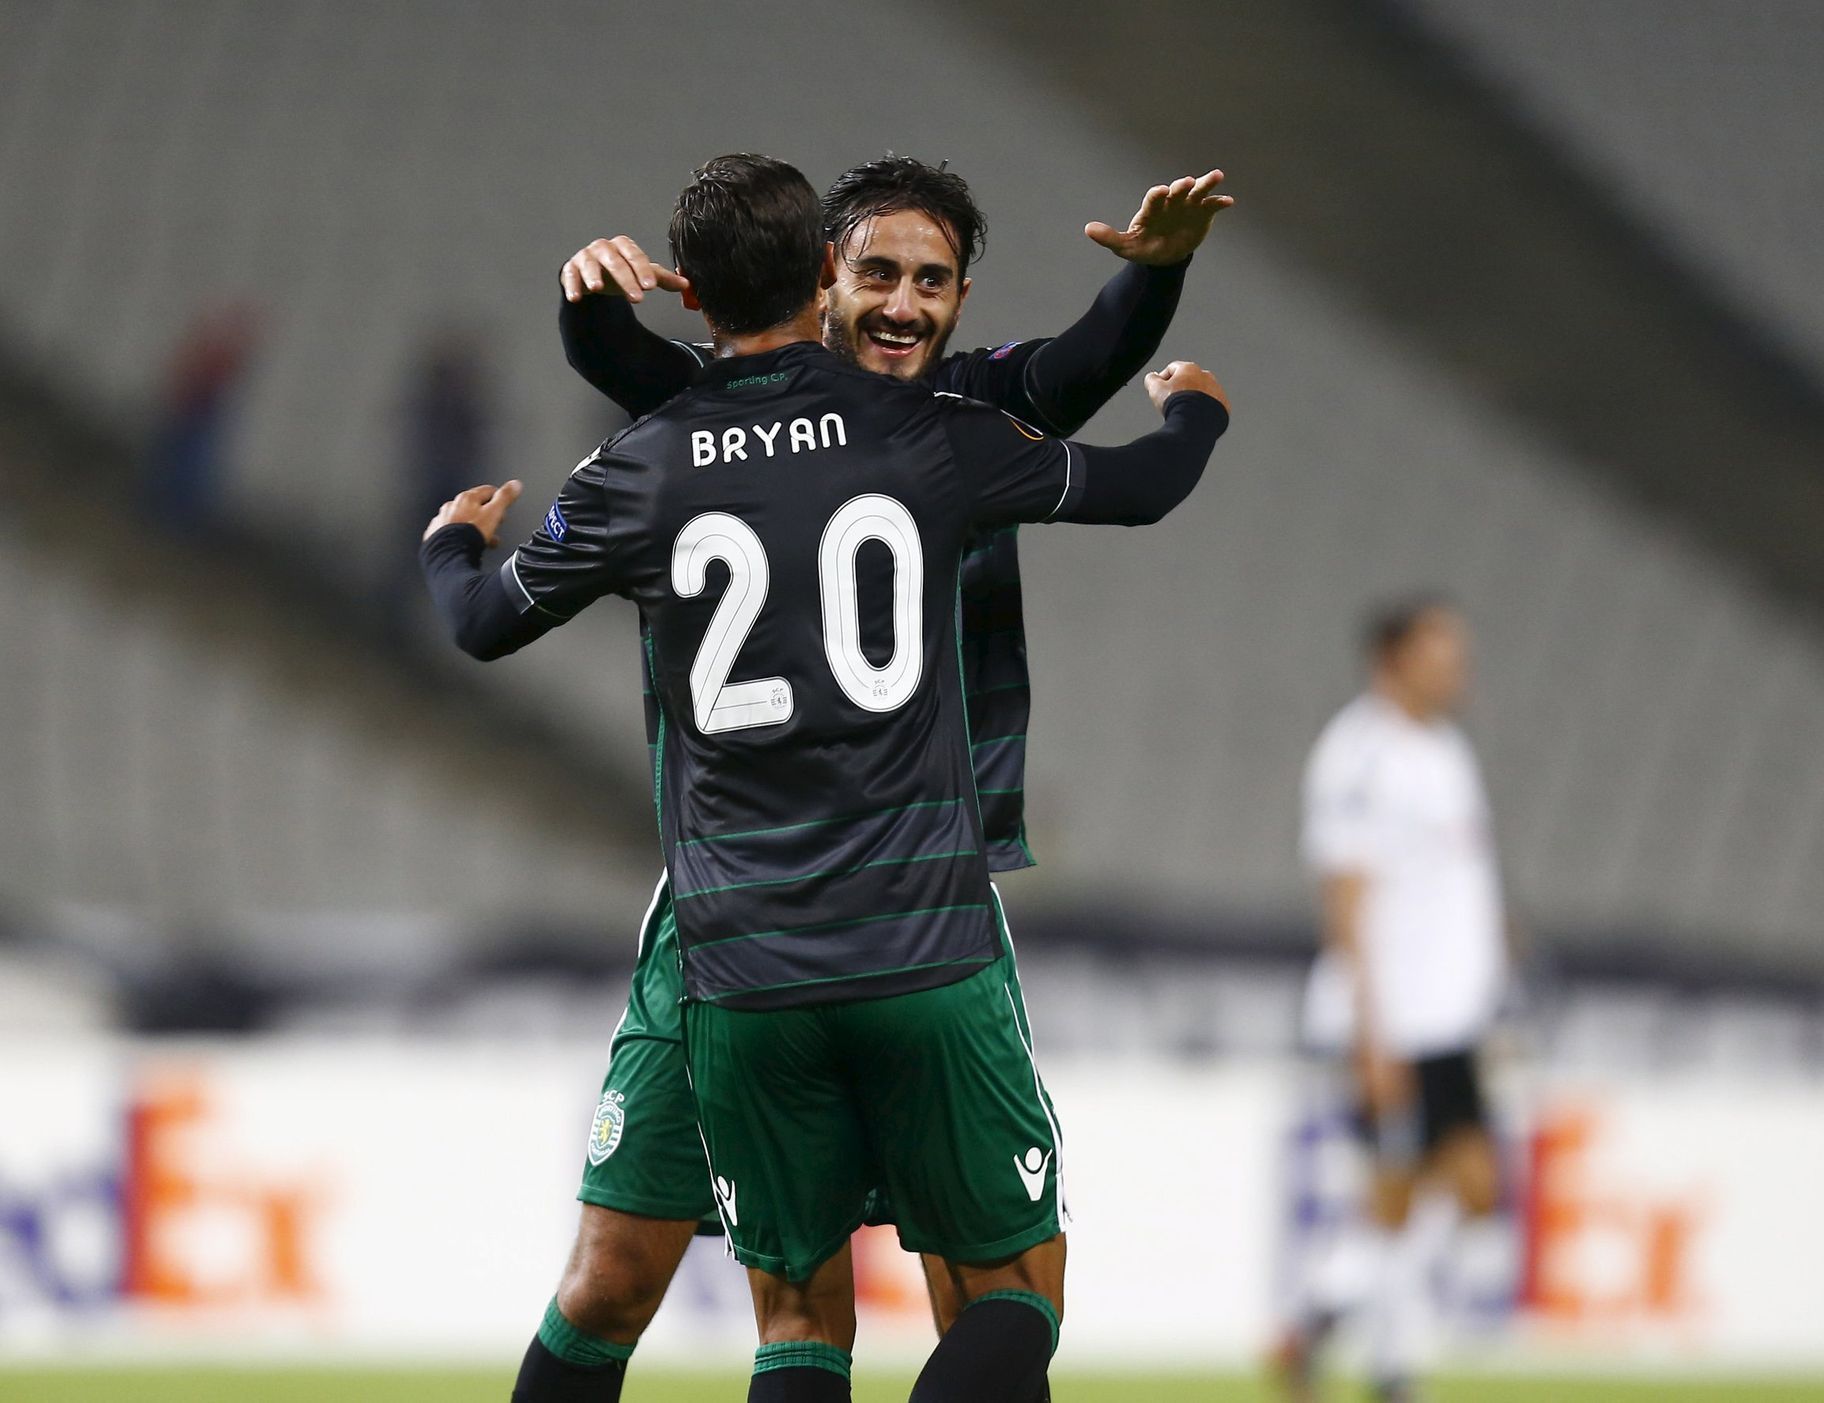 Ruiz Bryan (20) a Alberto Aquilani slaví gól Sportingu Lisabon